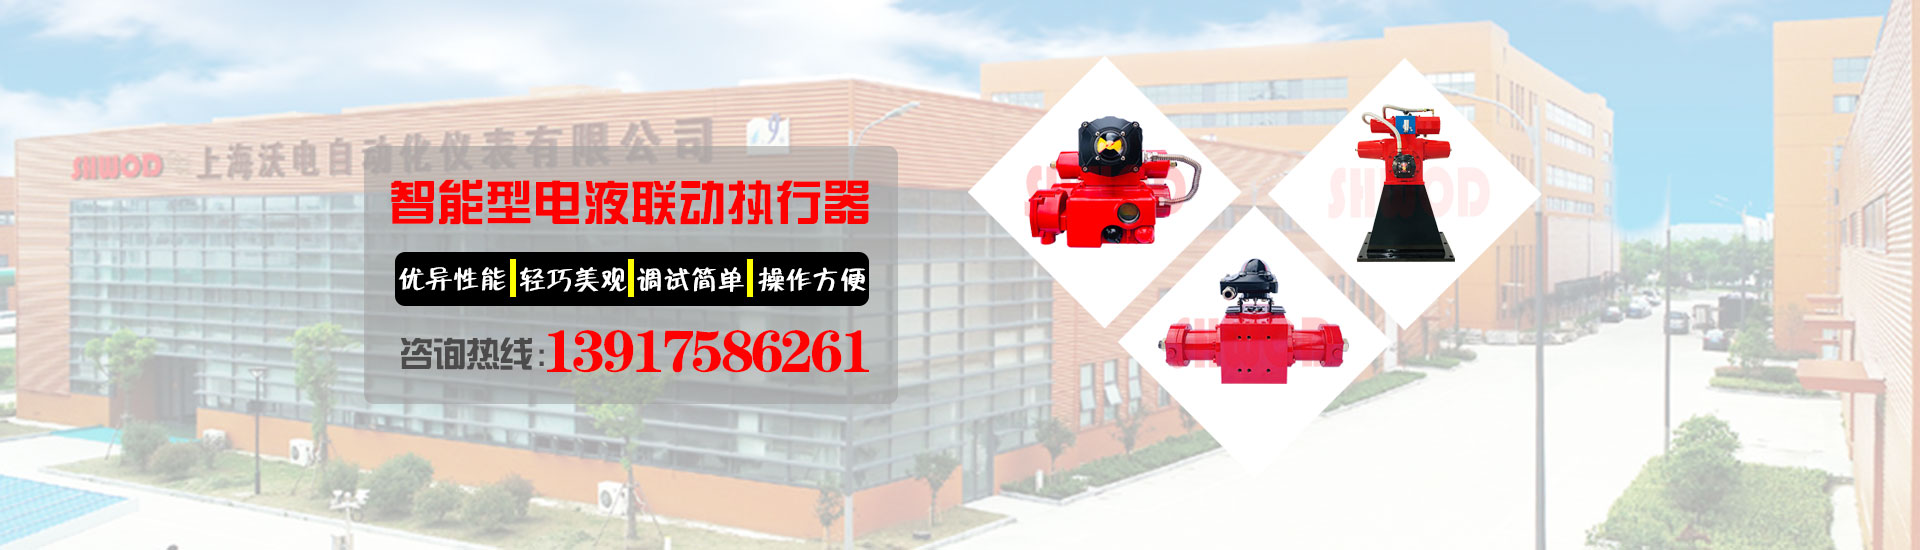 电液执行器厂家-上海沃电自动化仪表有限公司